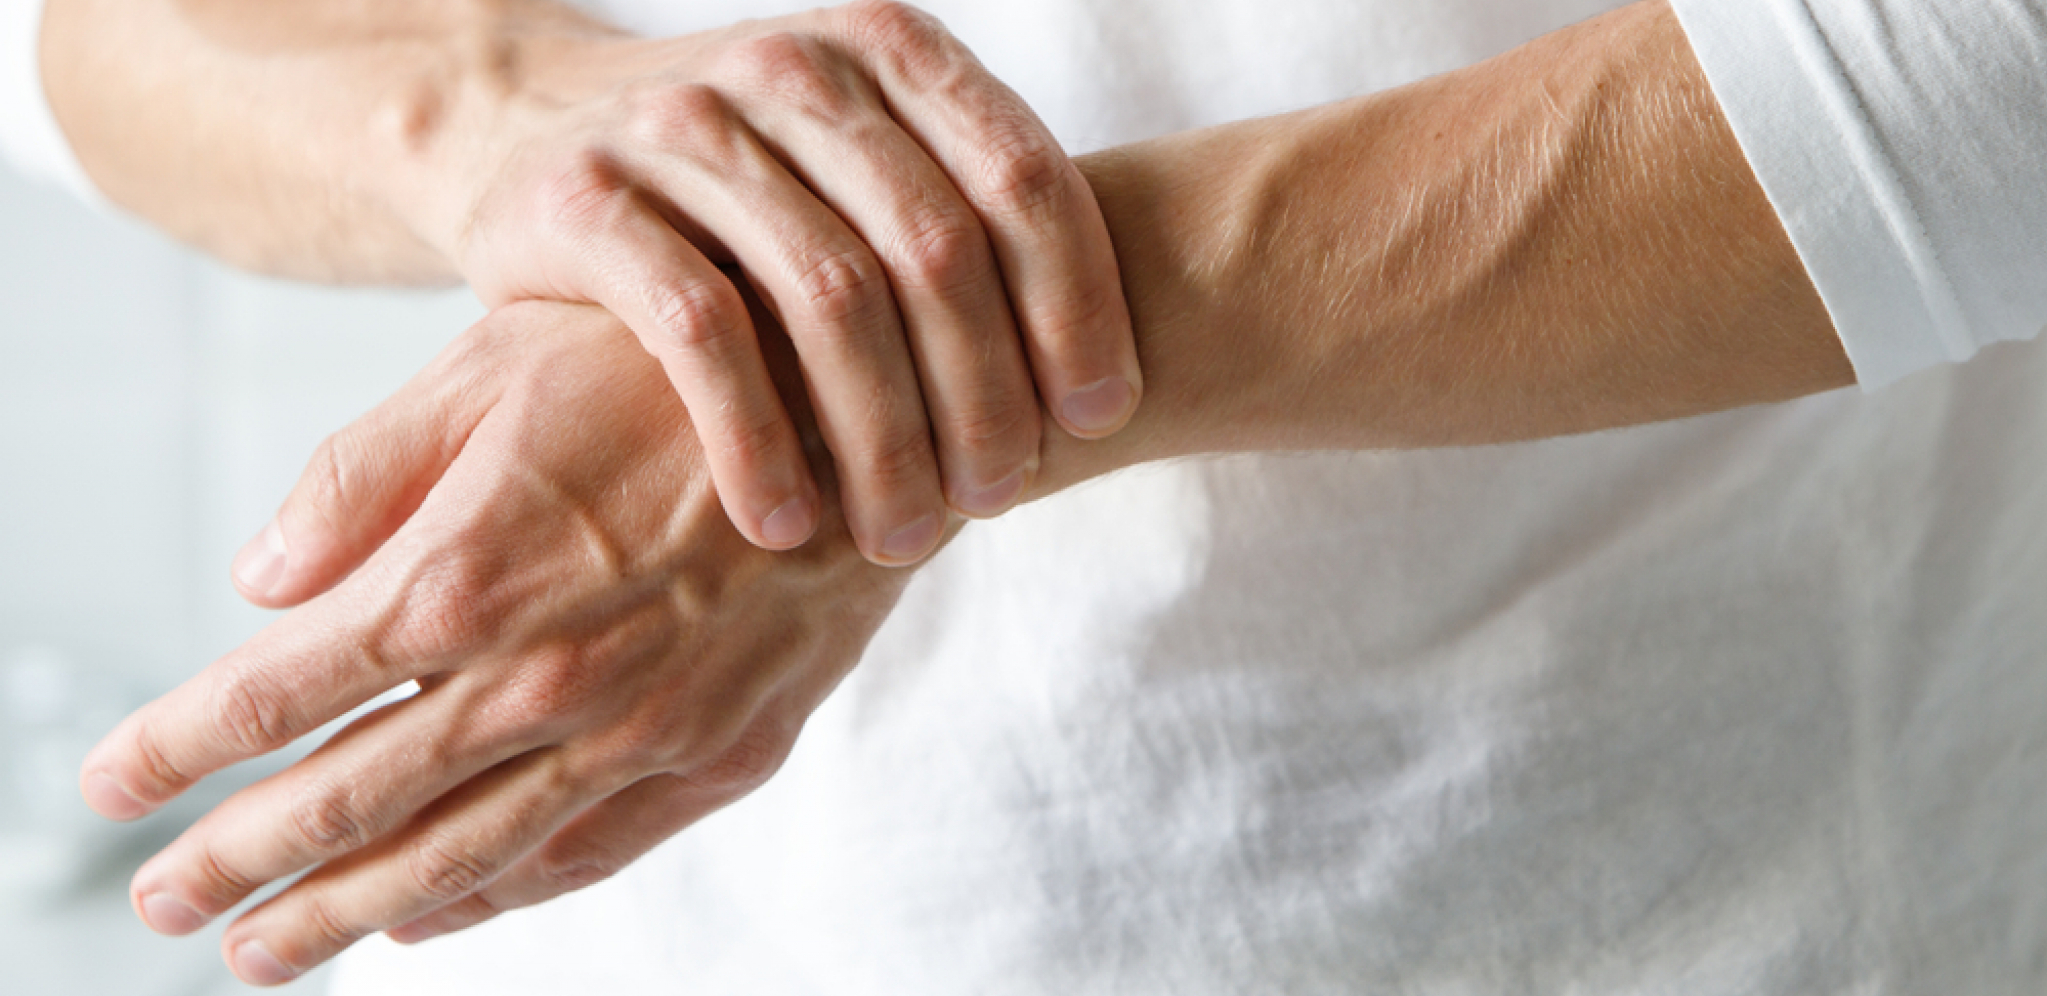 Ublažava simptome išijasa, reume i artritisa: Napravite prirodan lek protiv bolova